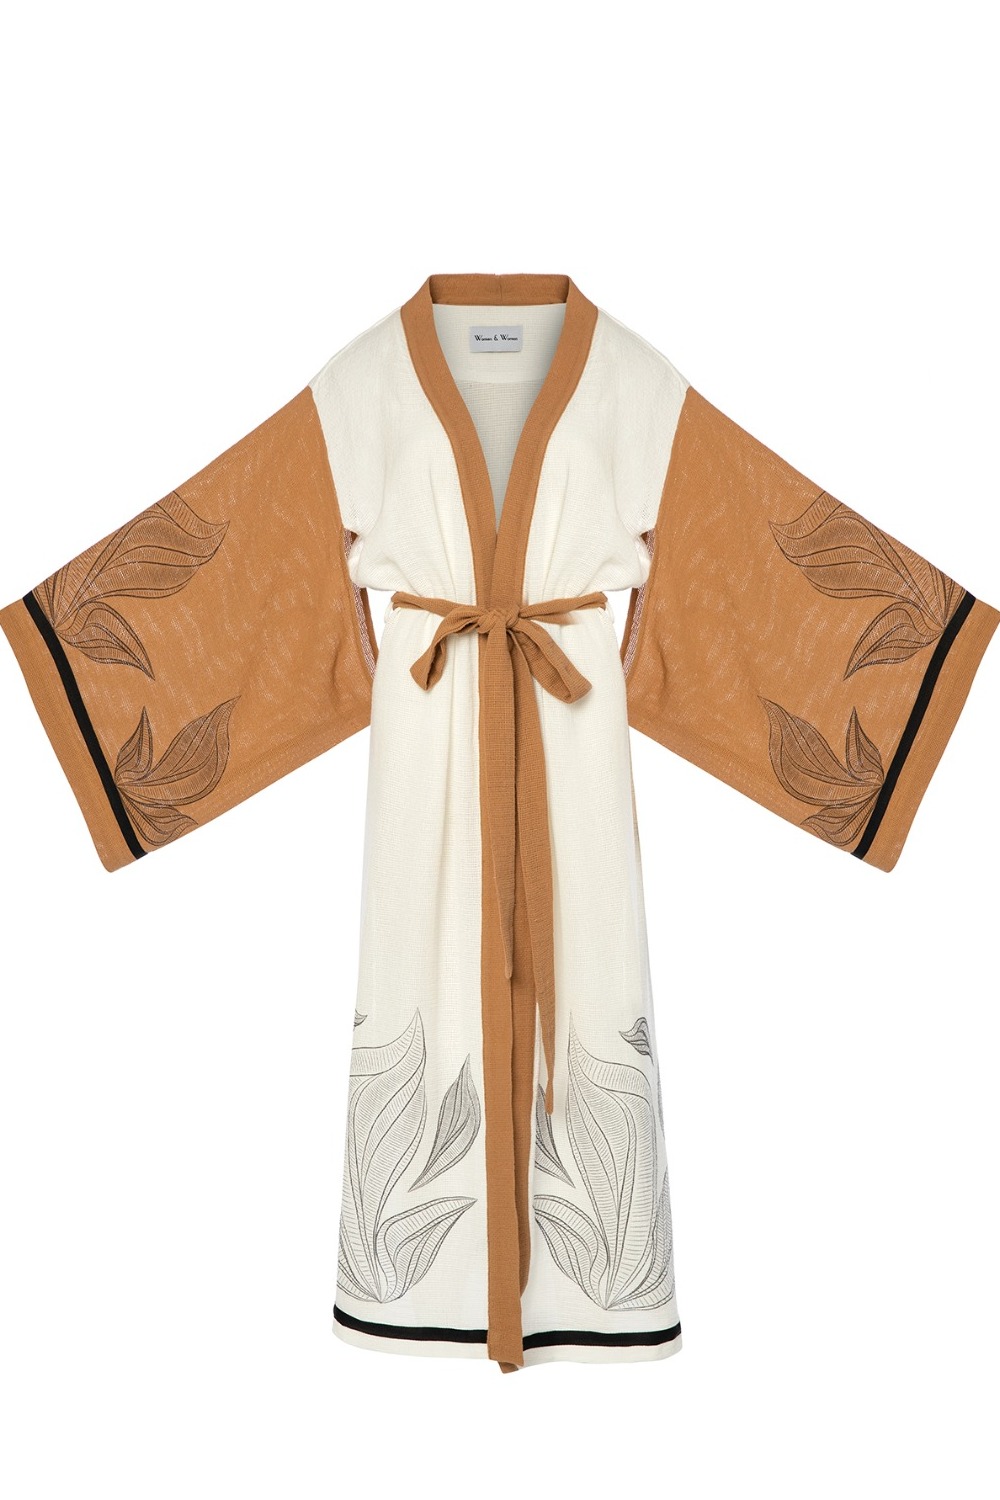 Sanchi Organik Kimono